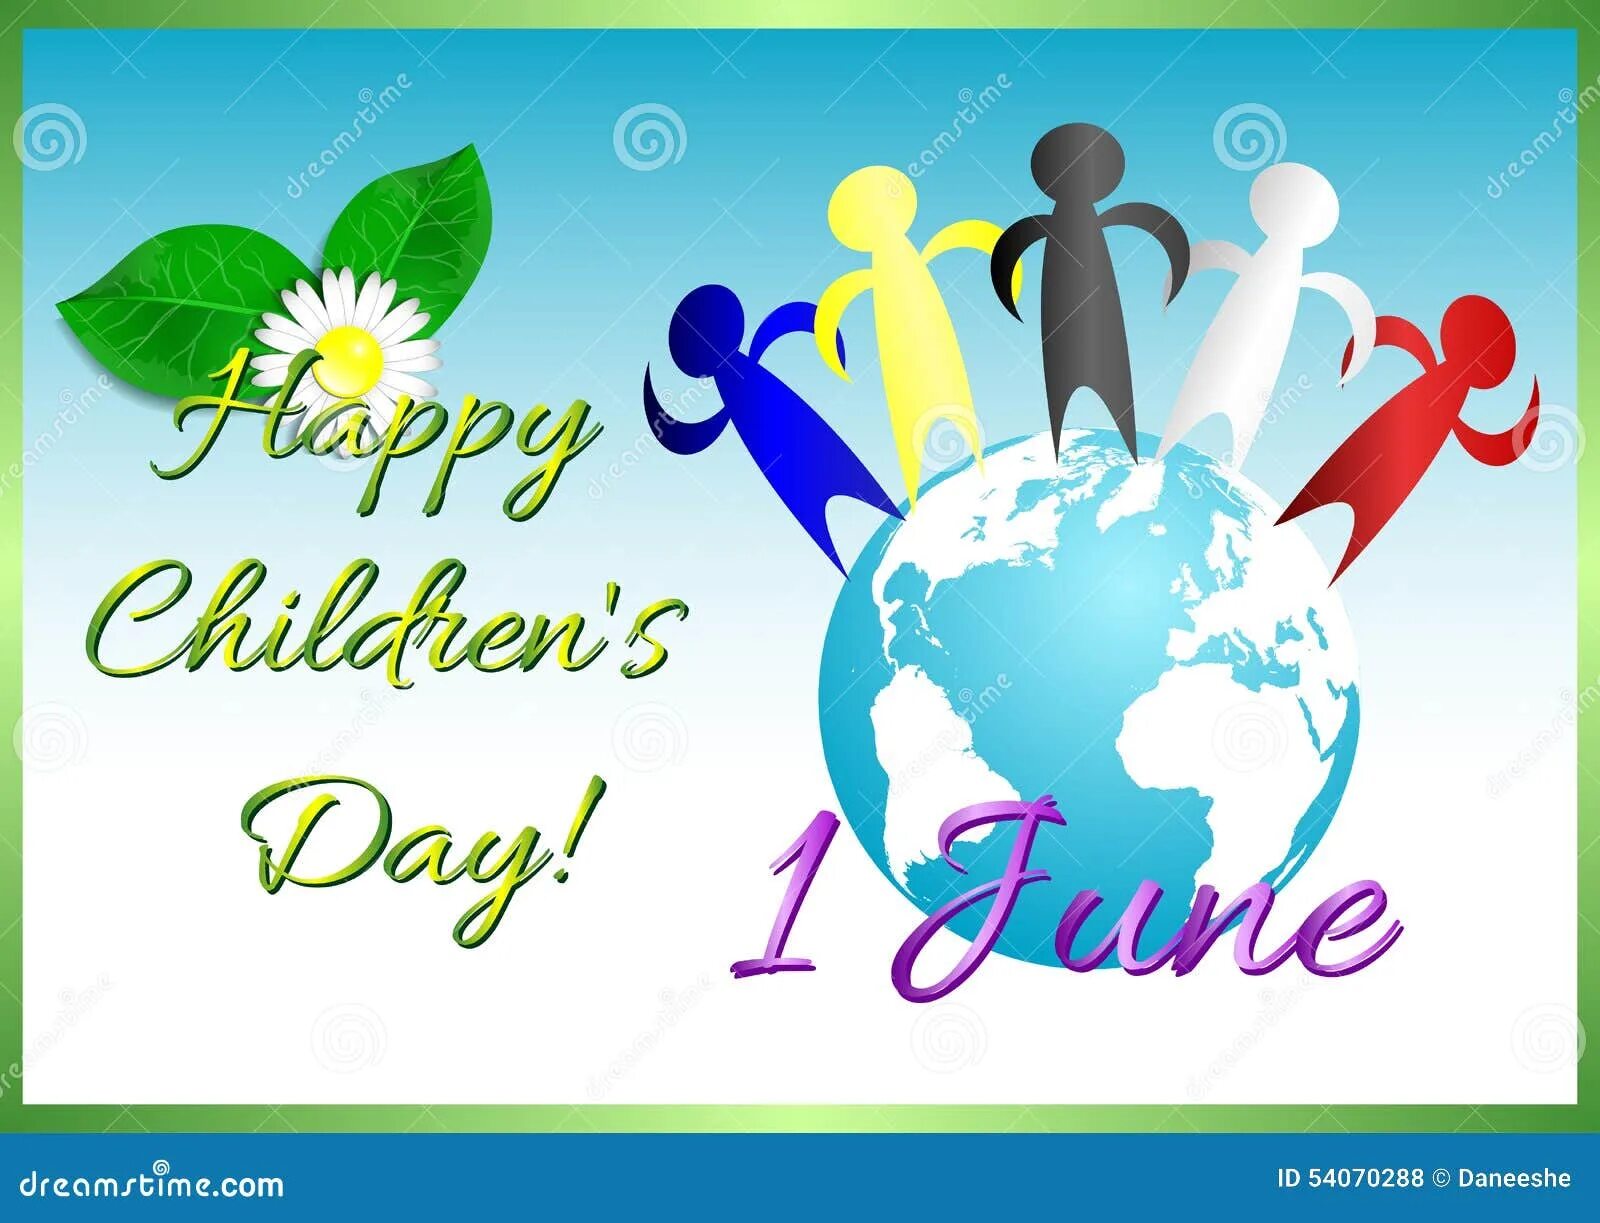 First june. Международный день защиты детей. День защиты детей на англ. Открытки с днём защиты детей 1 июня. День защиты детей баннер.